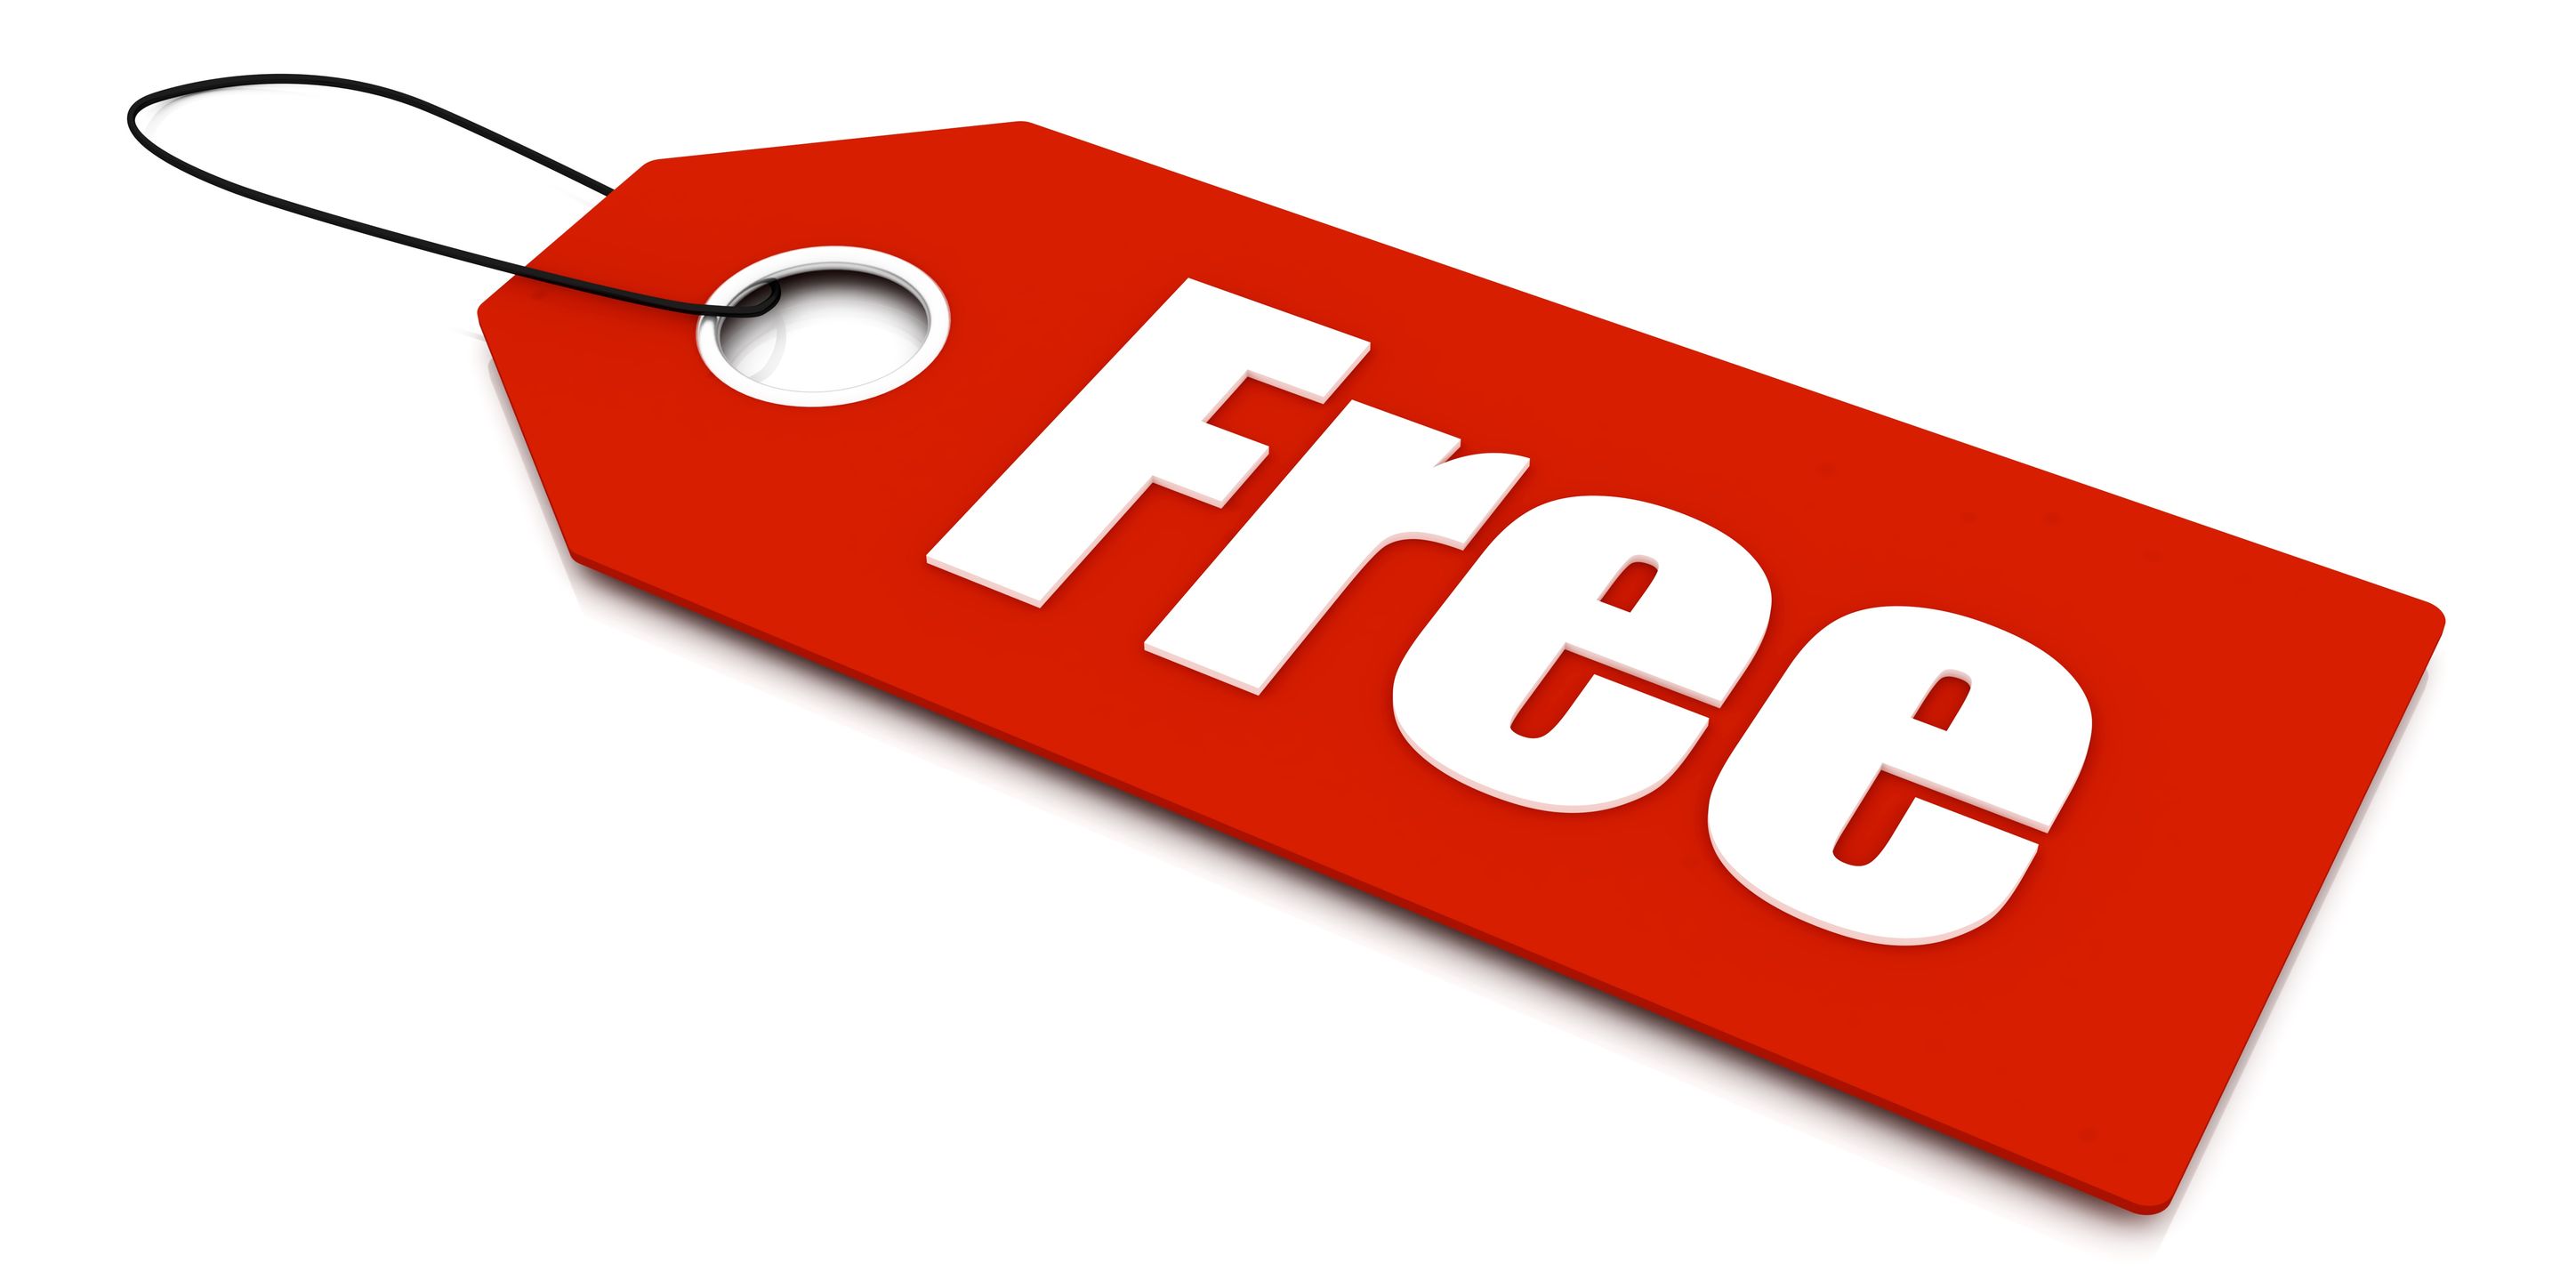 For Free? Really! | deshannonspeaks